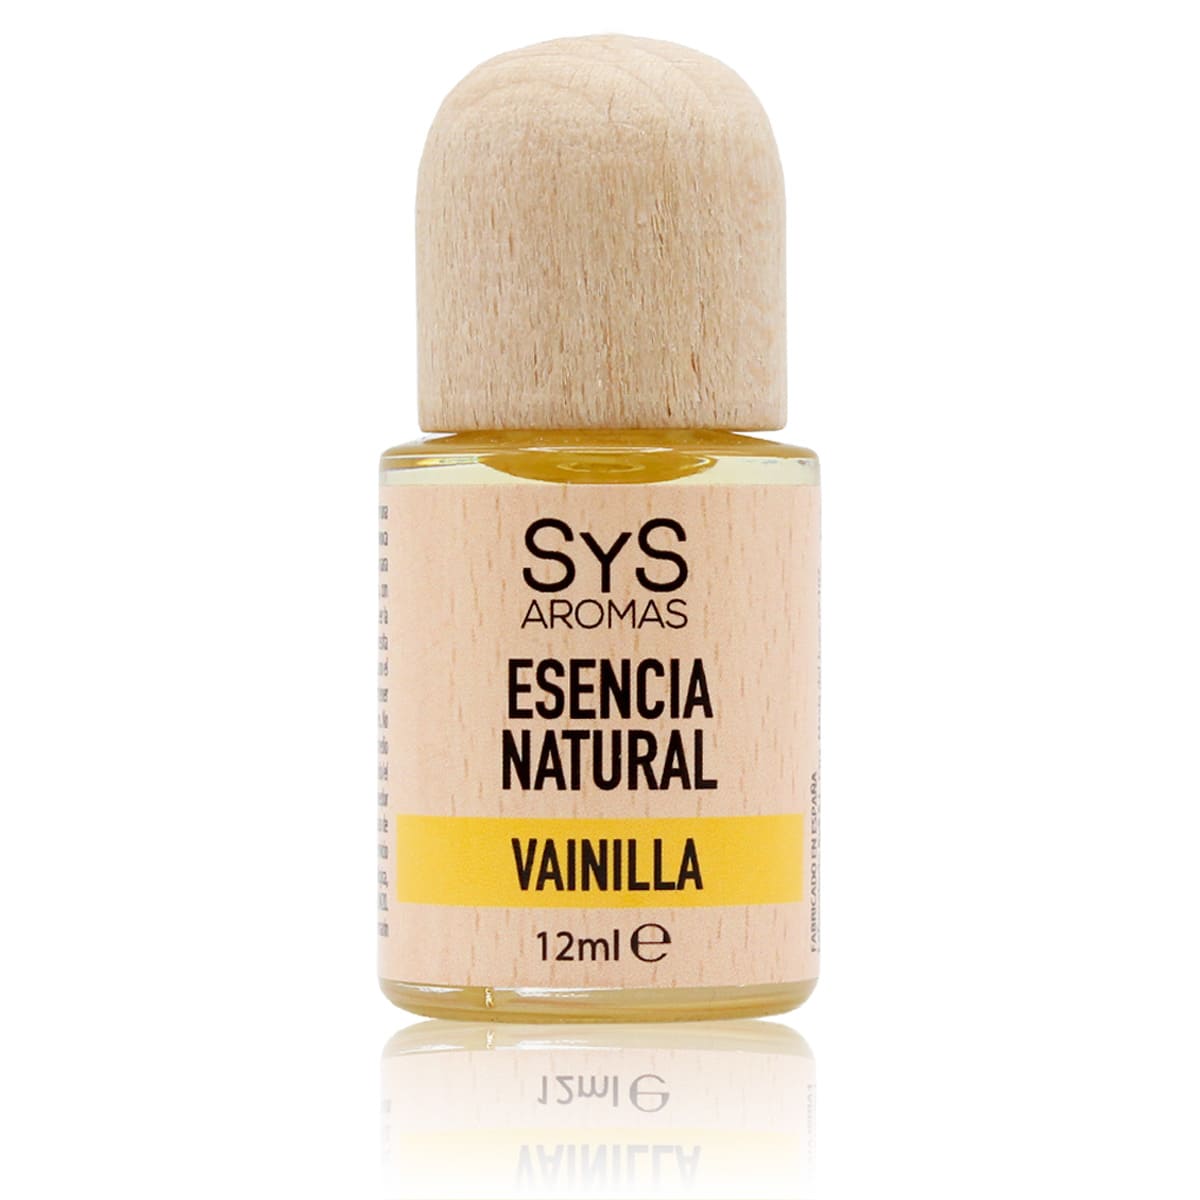 Buy Vanilla Essence 12ml SYS Aromas